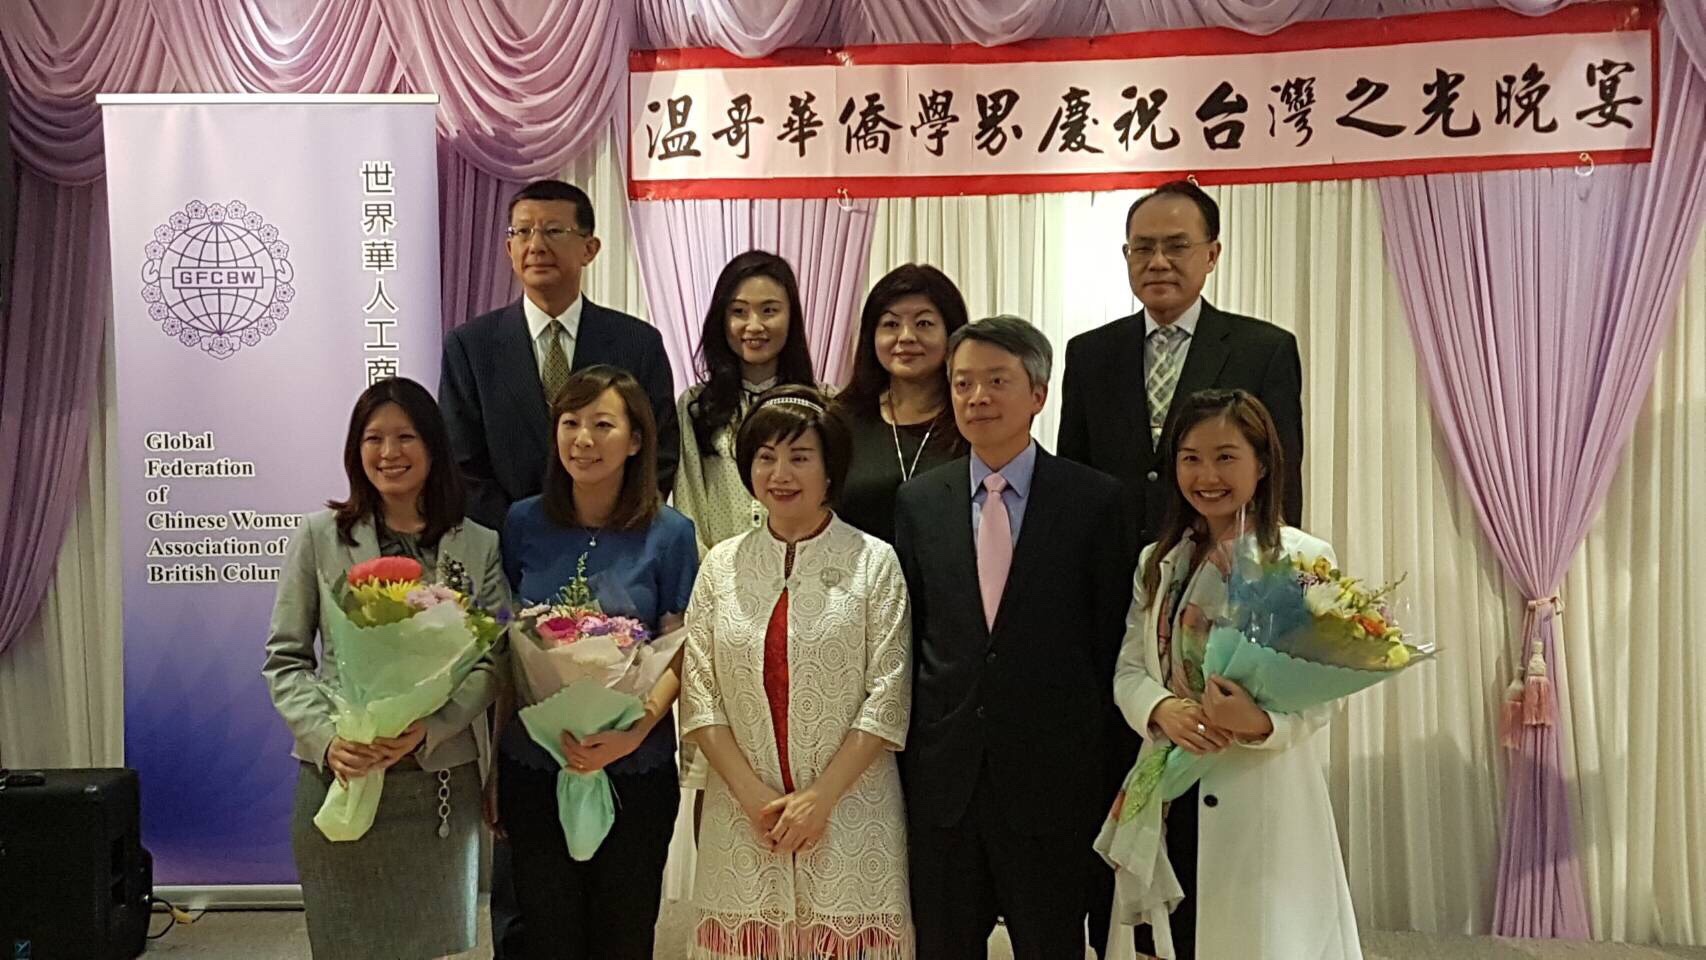 世界華人工商婦女企管協會溫哥華分會慶祝台灣之光晚宴